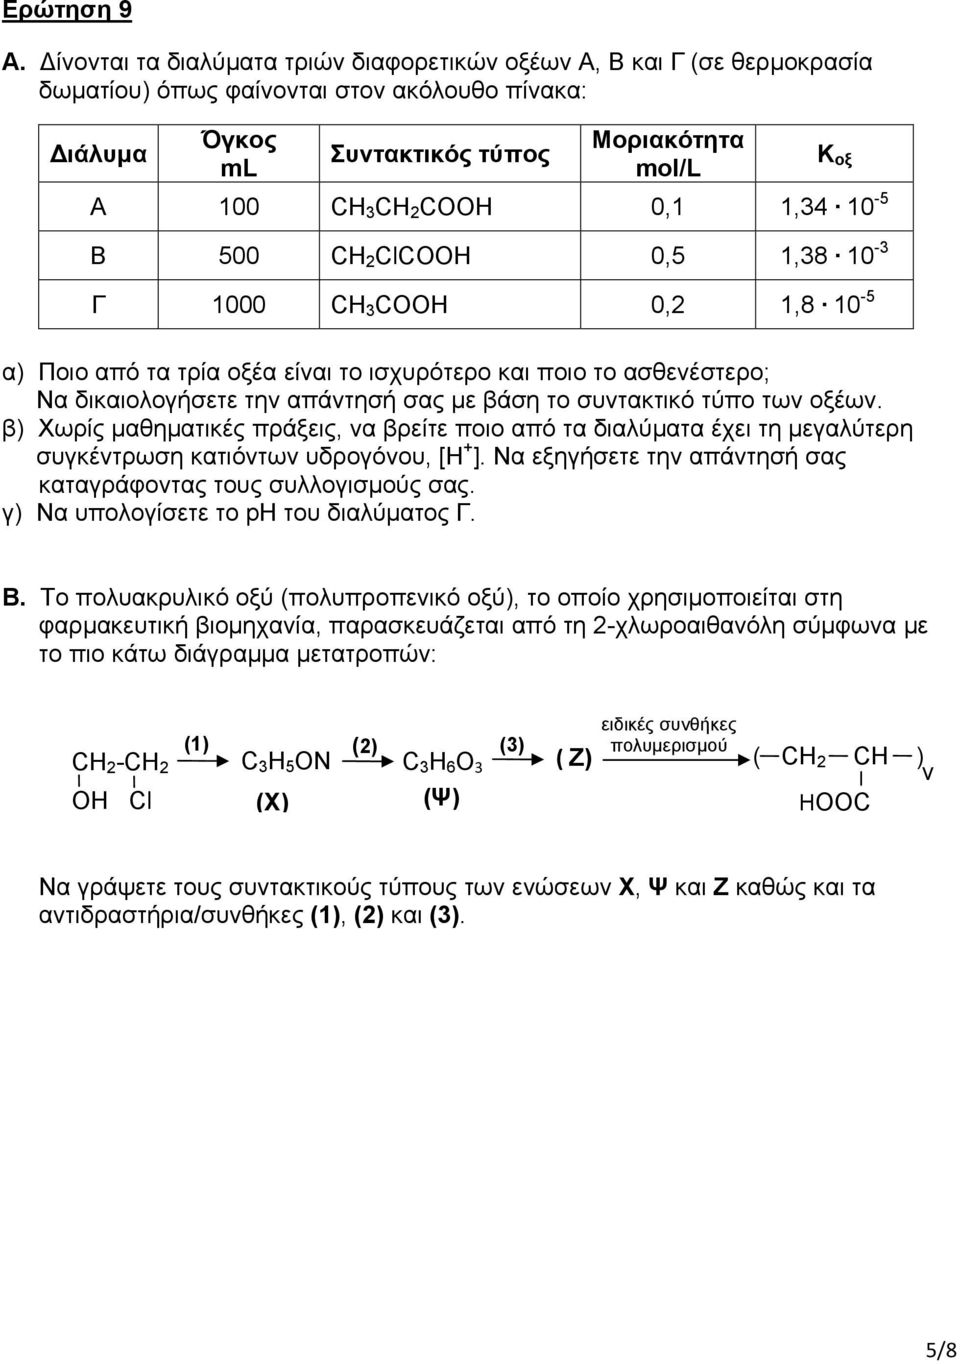 1,34 10-5 Β 500 CH 2 ClCOOH 0,5 1,38 10-3 Γ 1000 CH 3 COOH 0,2 1,8 10-5 Κ οξ α) Ποιο από τα τρία οξέα είναι το ισχυρότερο και ποιο το ασθενέστερο; Να δικαιολογήσετε την απάντησή σας με βάση το